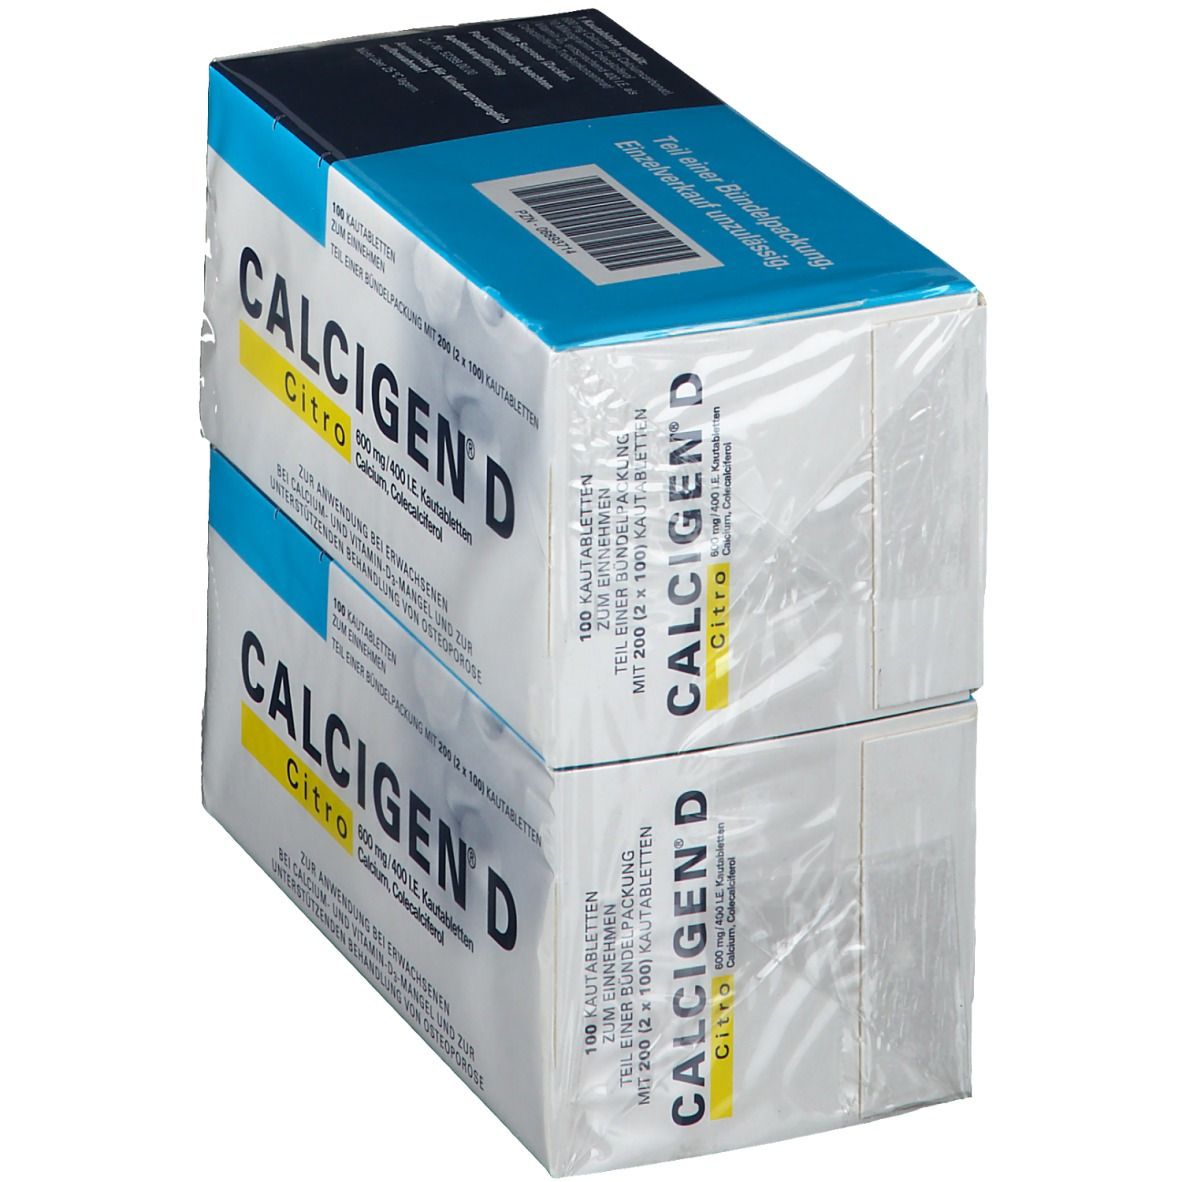 Calcigen® D Citro 600 mg / 400 I.E.